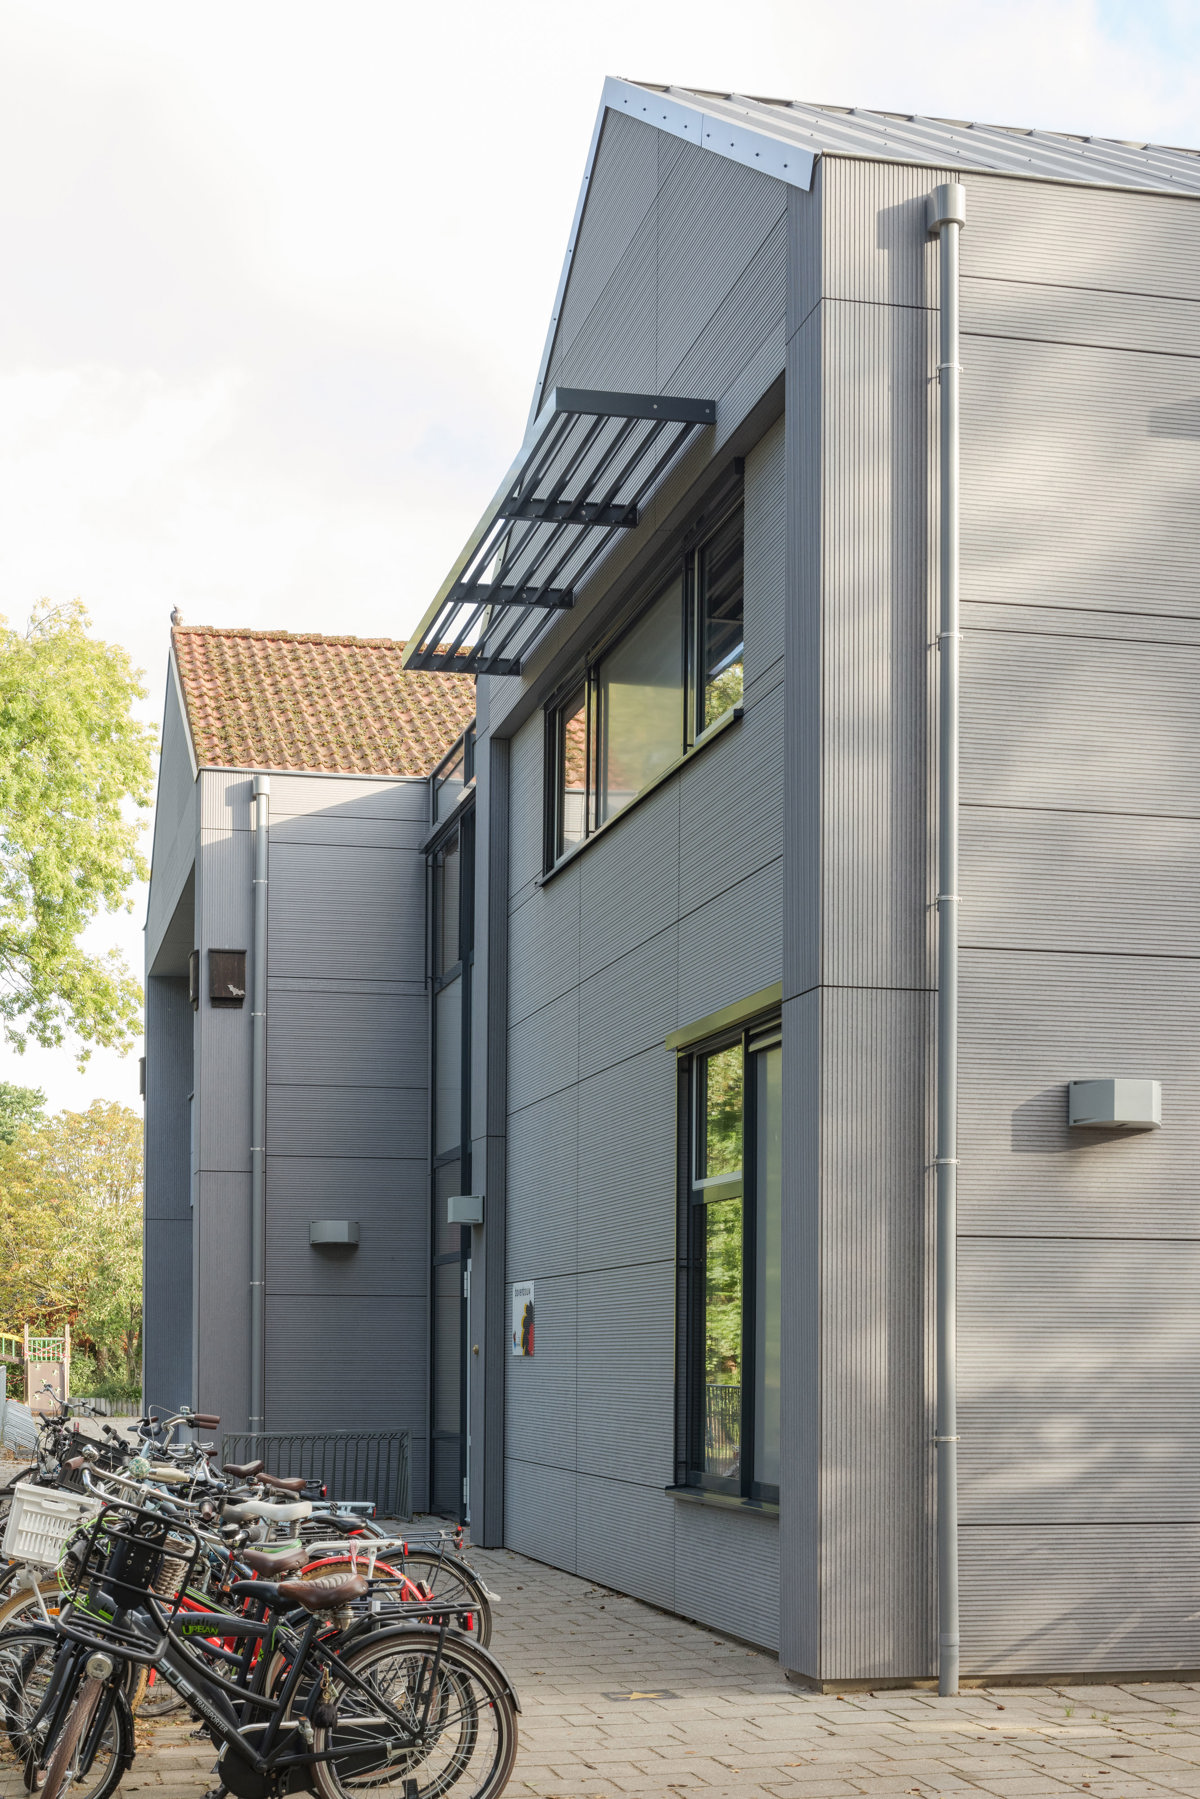 Pour la rénovation de l'école primaire De Hoeve, l'architecte Martien Van Vliet (Bureau Bos) a résolument opté pour EQUITONE